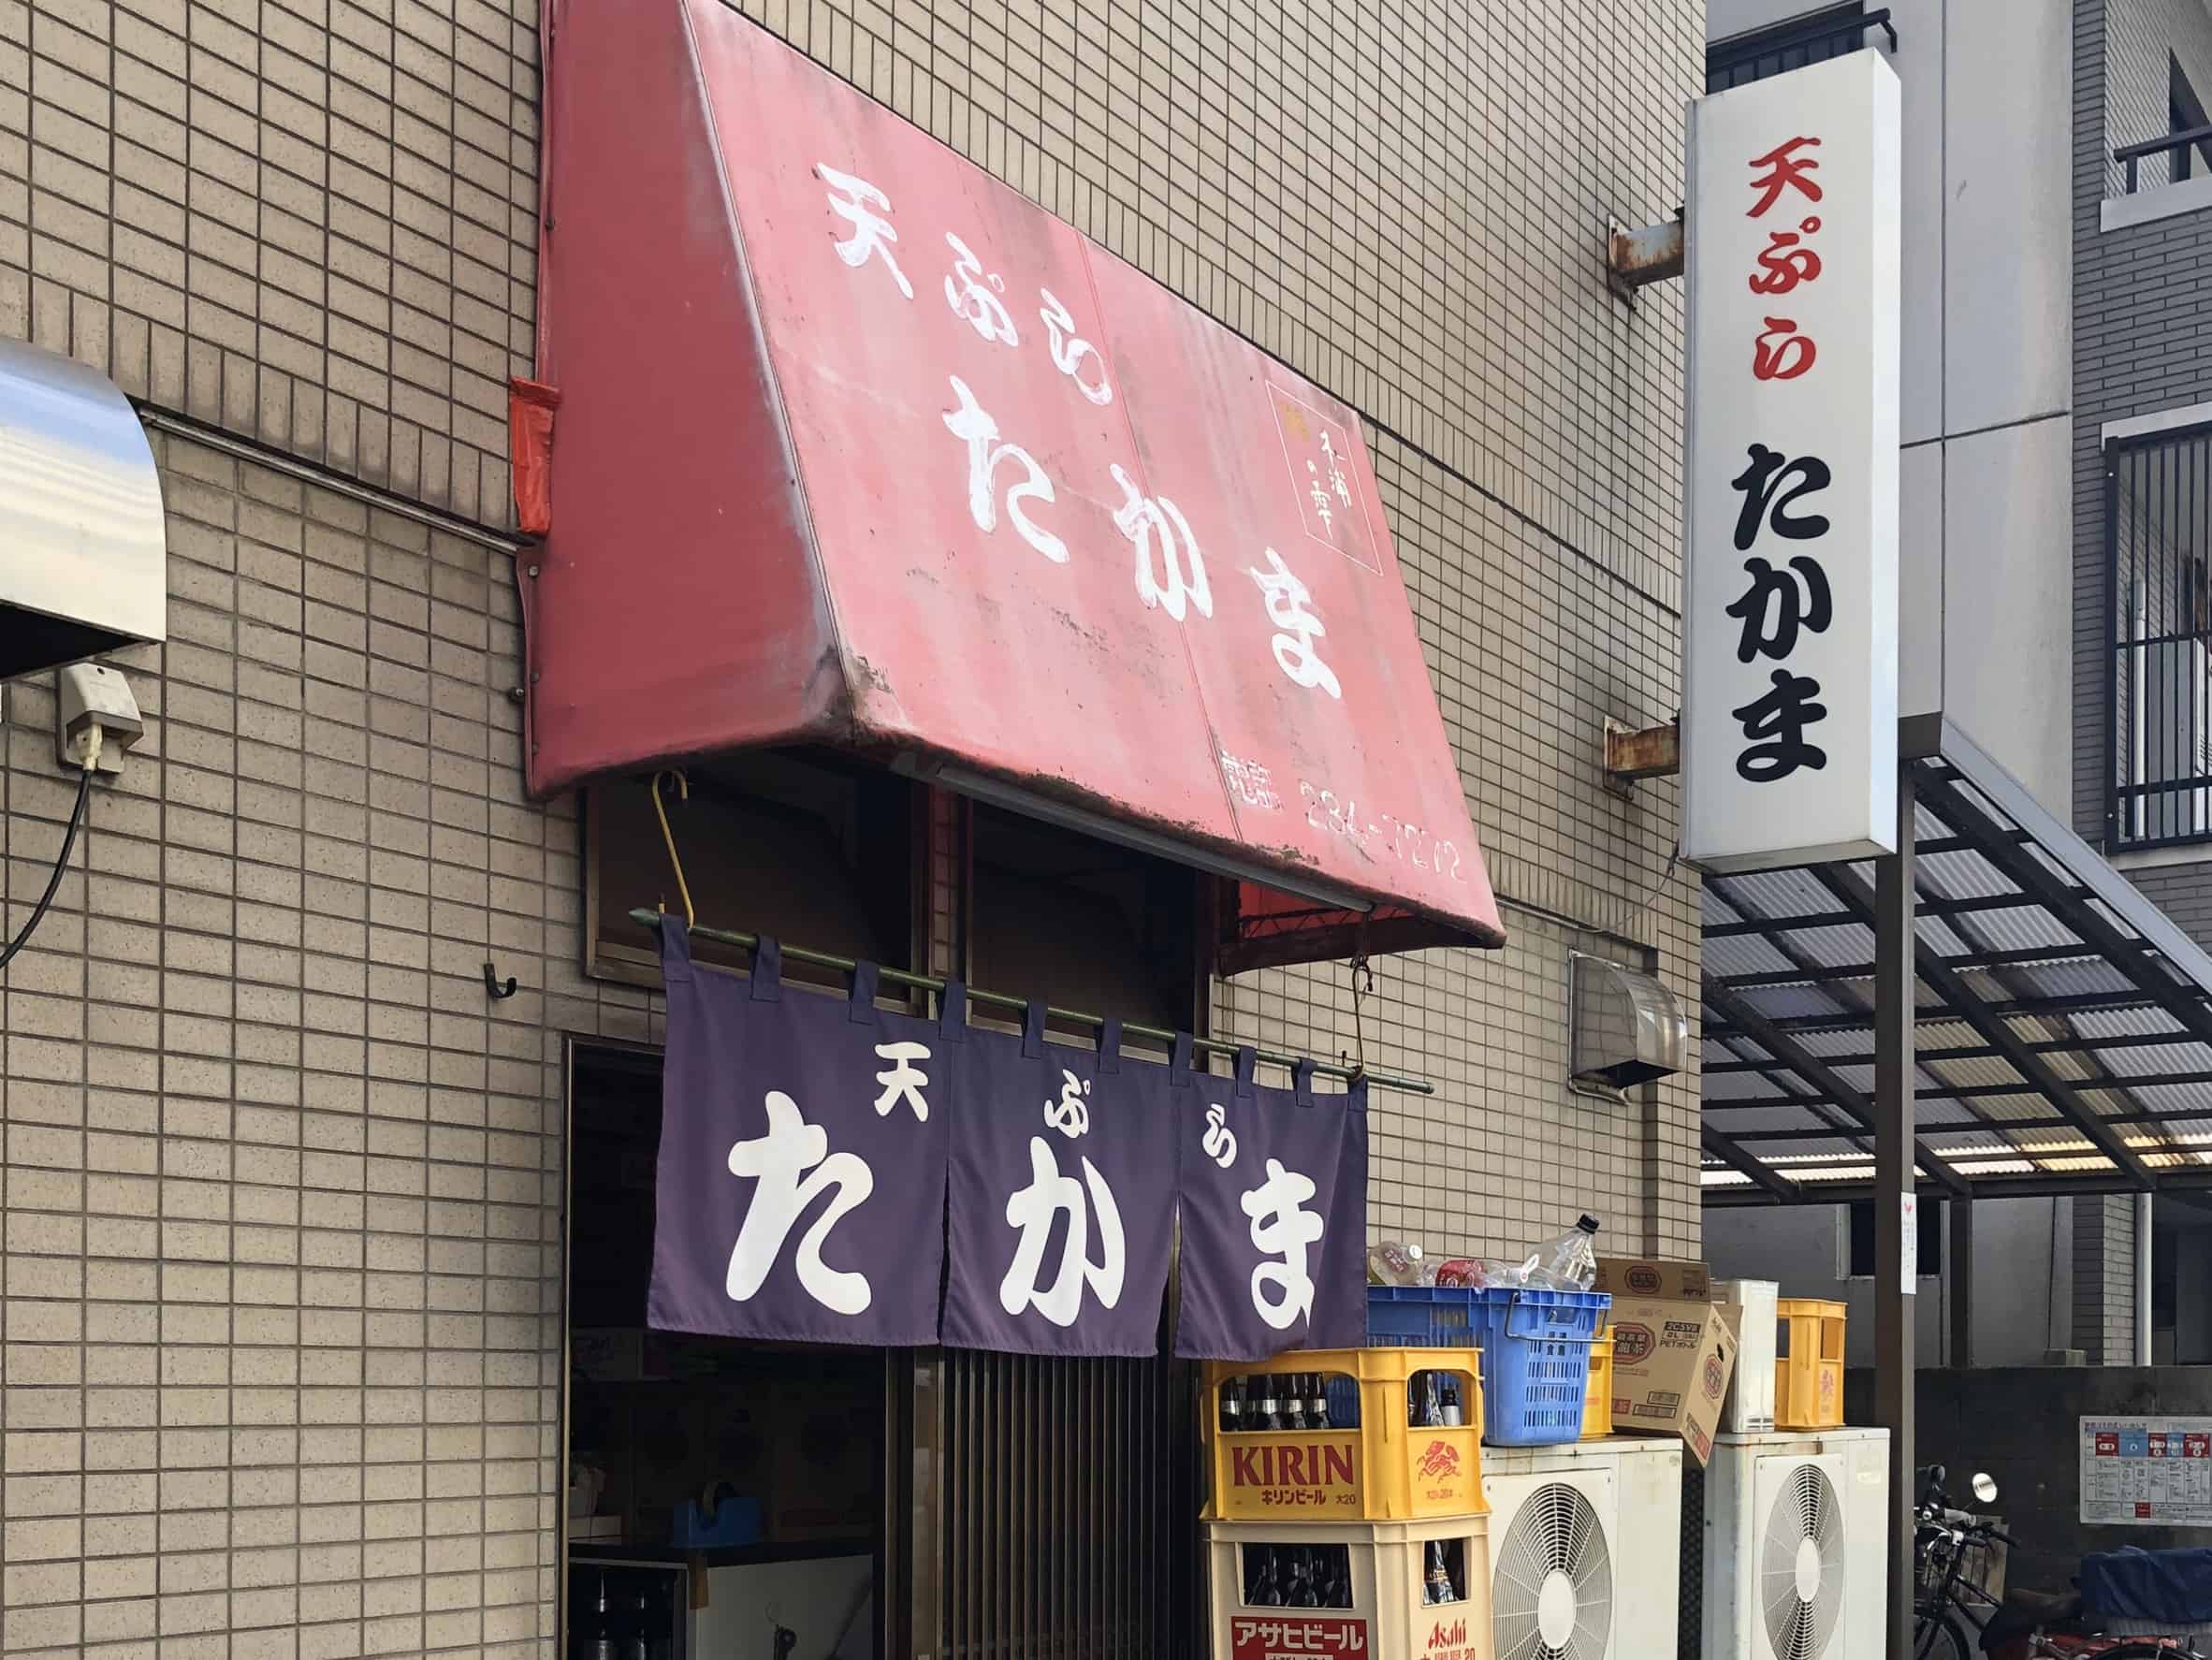 ร้านอาหารขึ้นชื่อในฮิโรชิม่า